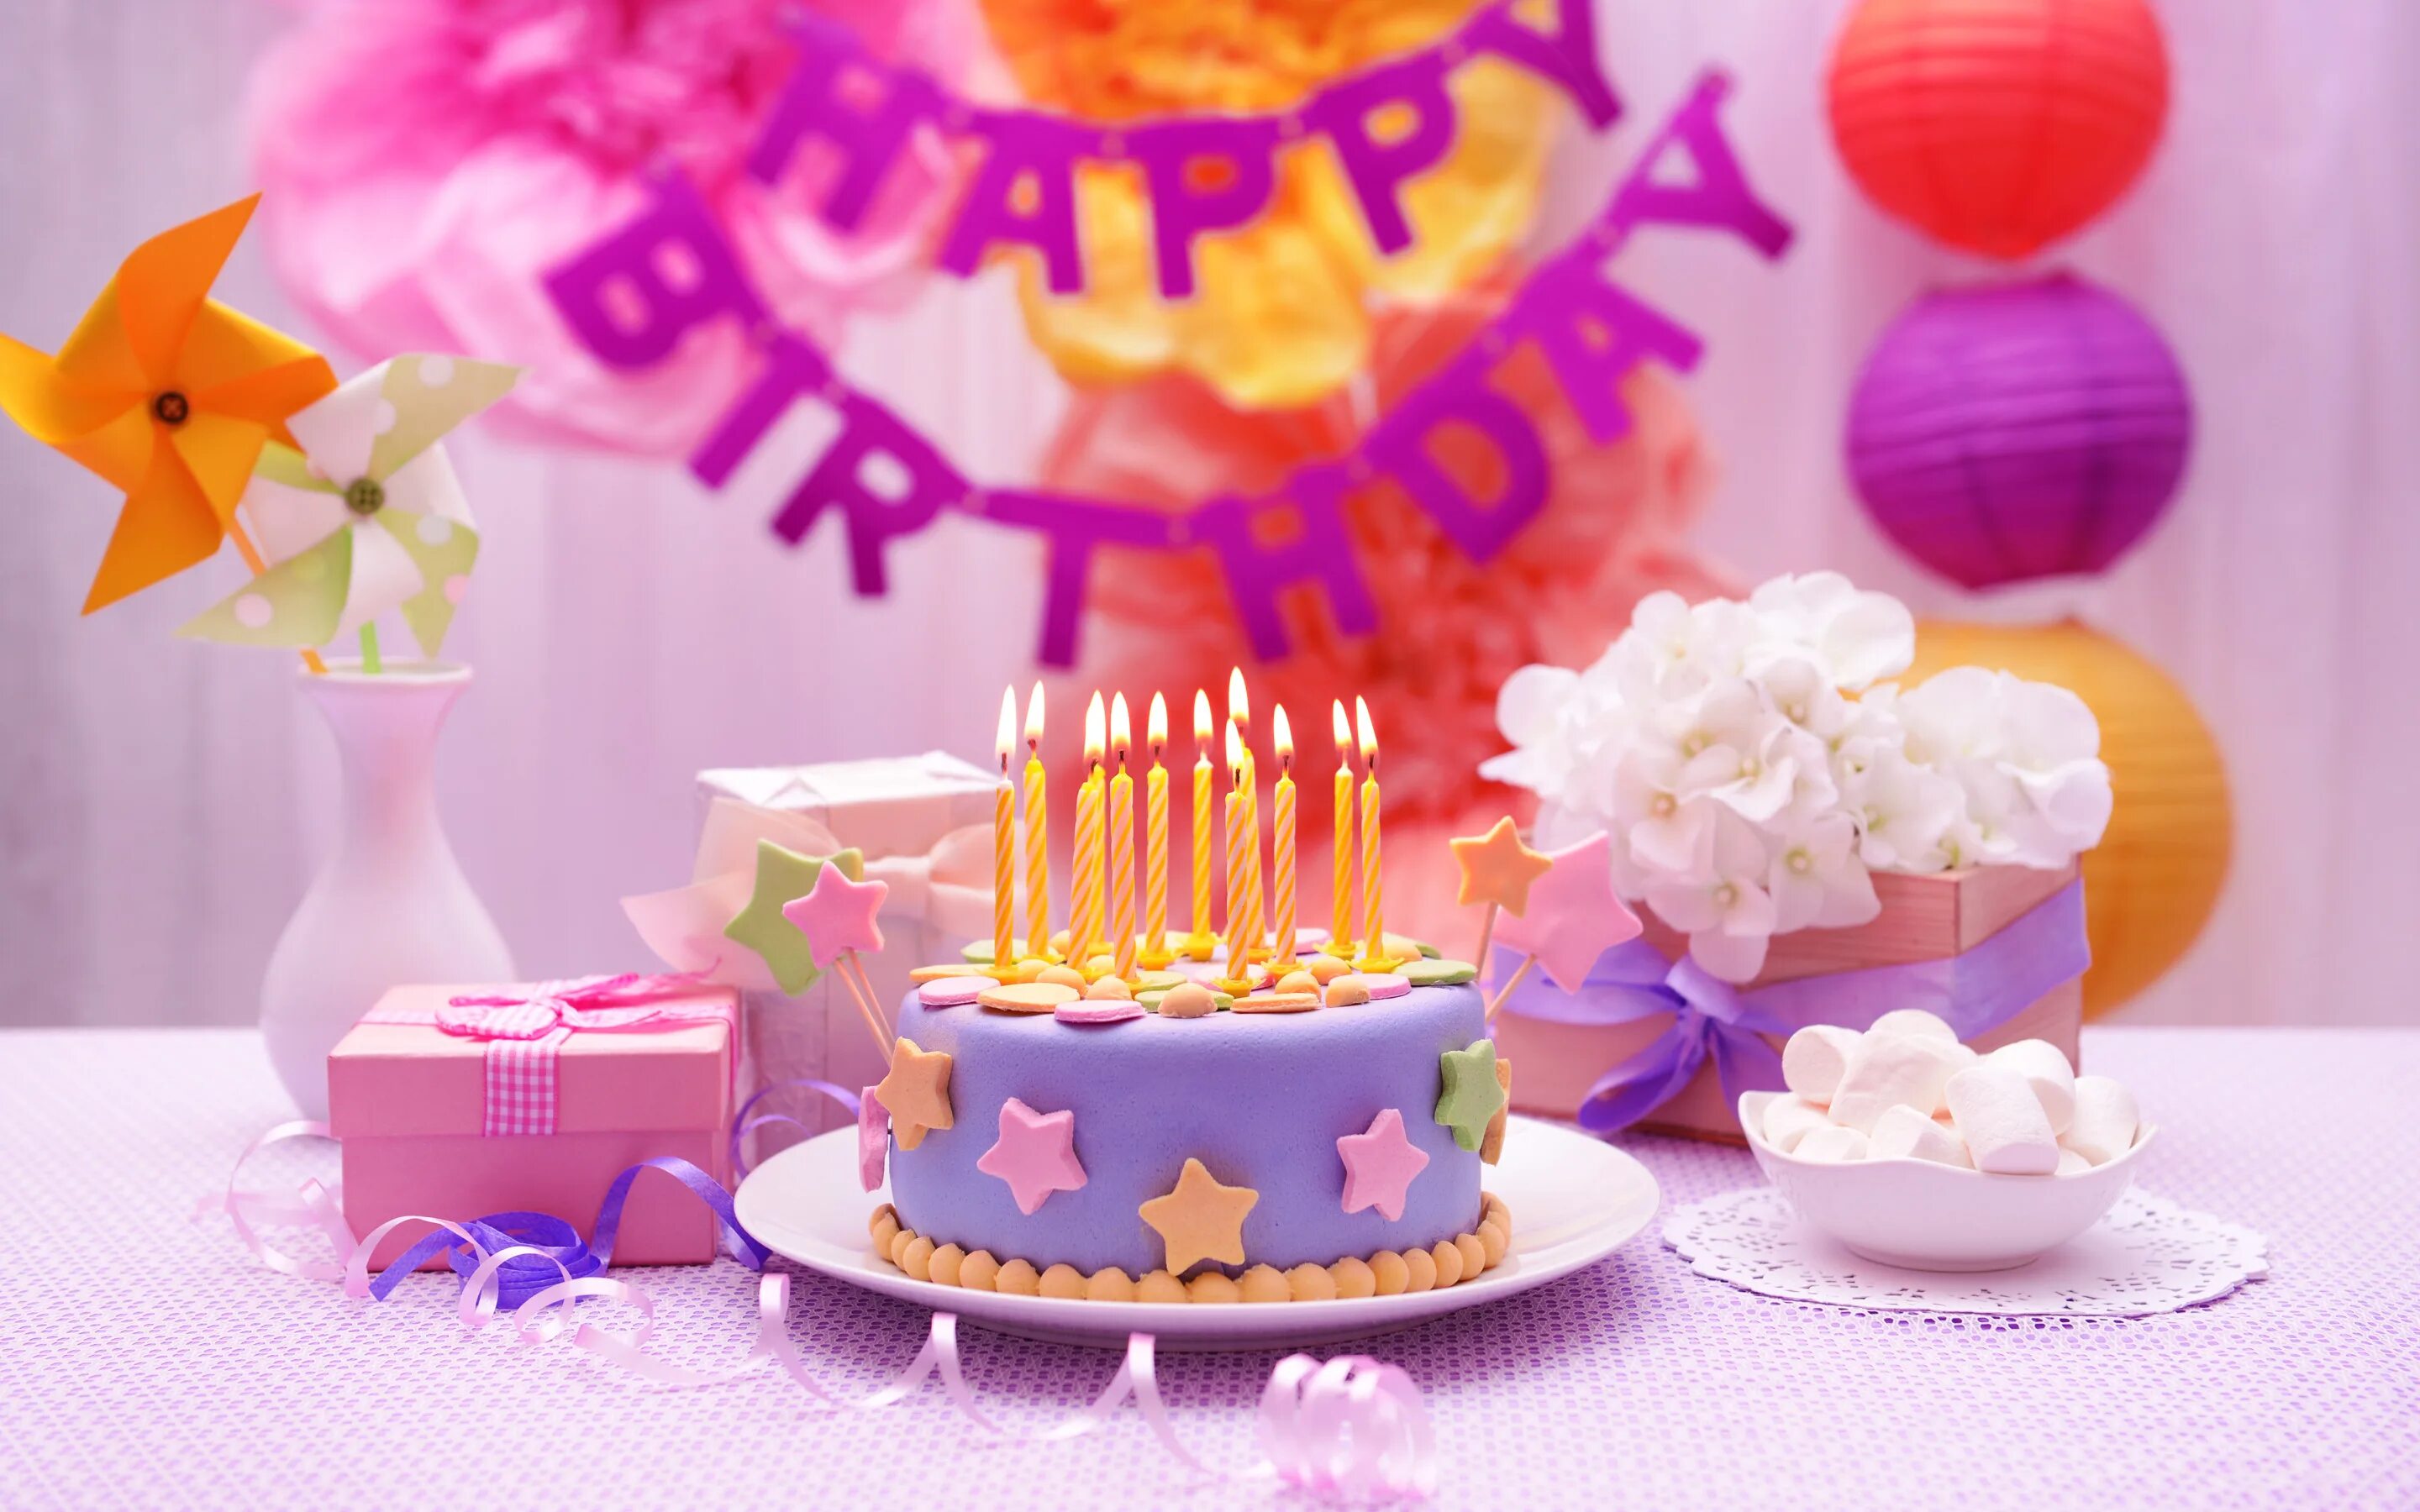 A birthday. Тортик с днем рождения. Красивый торт со свечами. С днем рождения тортиктик. Праздничный торт на день рождения.